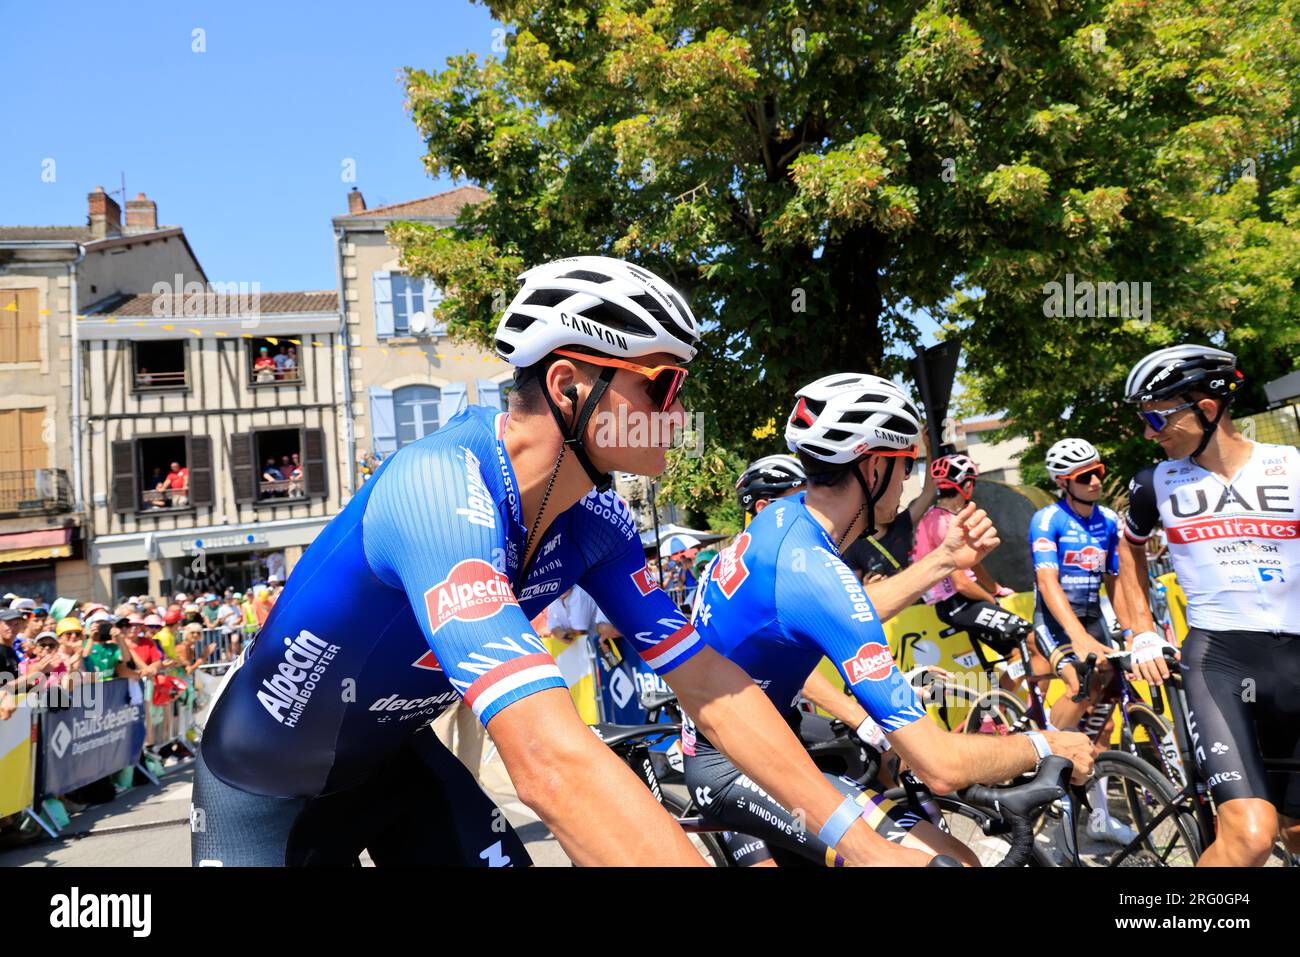 Mathieu Van der Poel avant le départ de la 9ème étape du Tour de France le 9 juillet 2023 à Saint-Léonard-de-Noblat cité de son Grand-père Raymond Pou Stockfoto